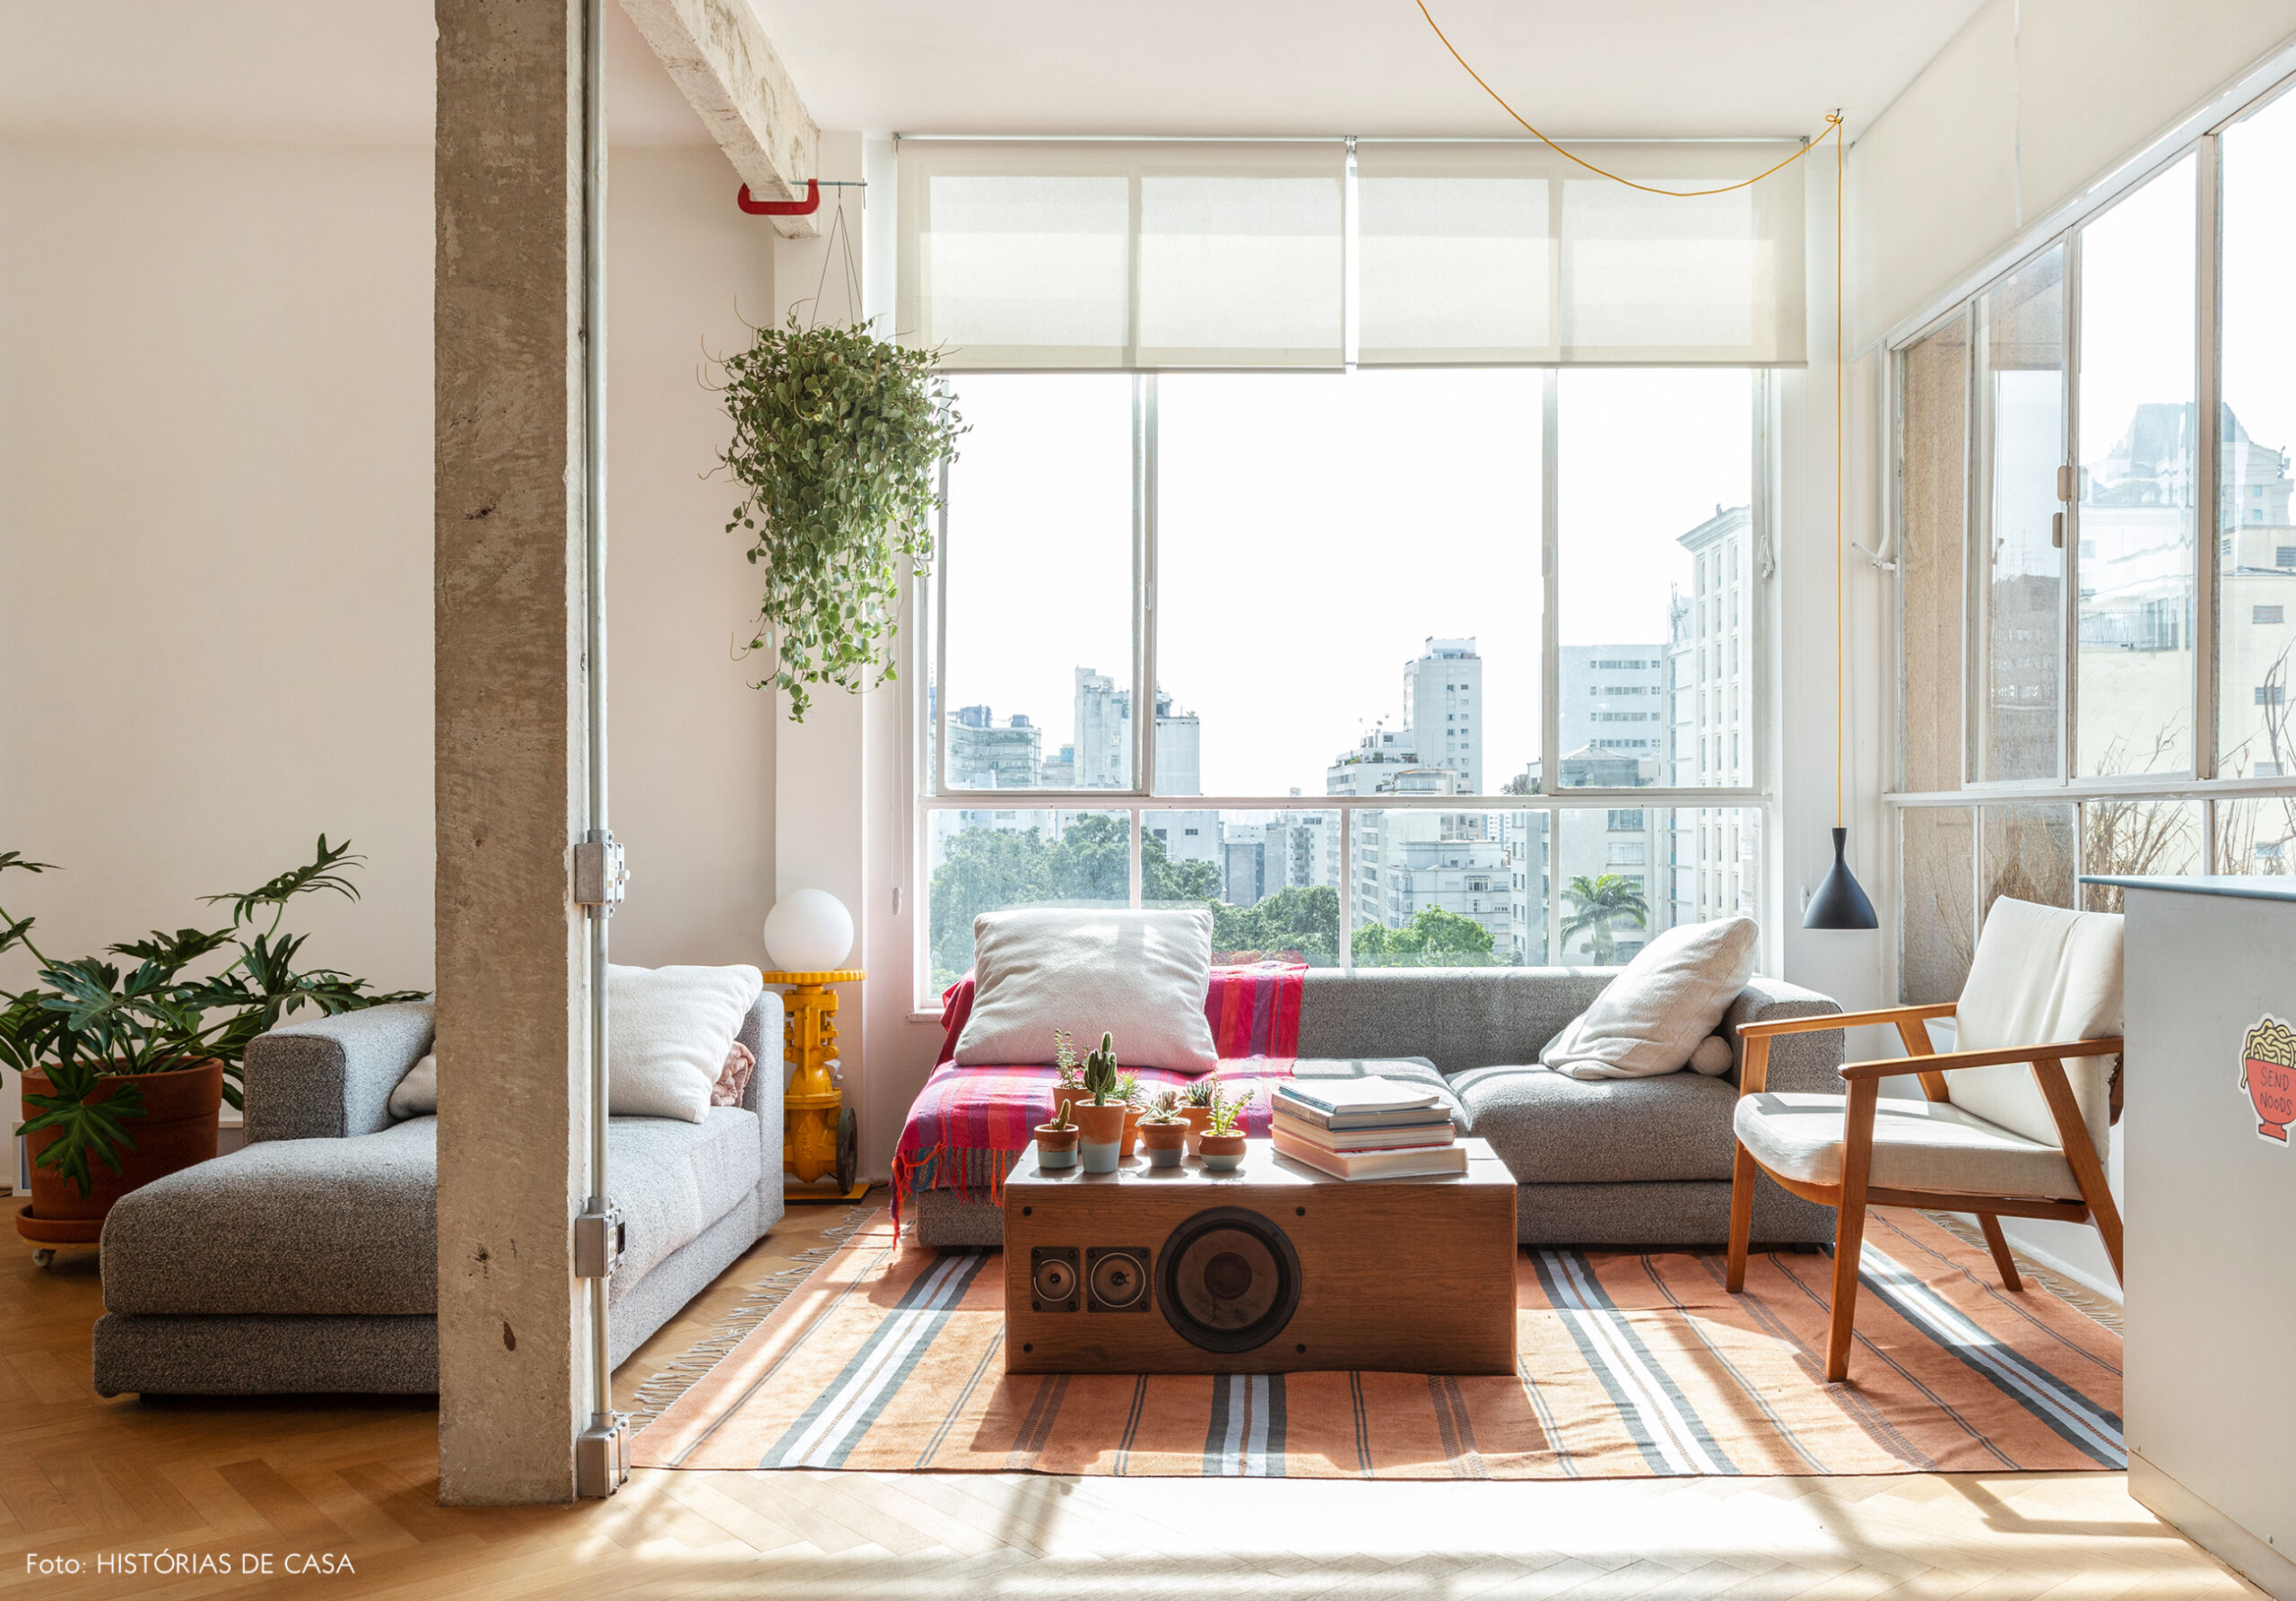 Apartamento com janelas de serralheria branca e piso de madeira